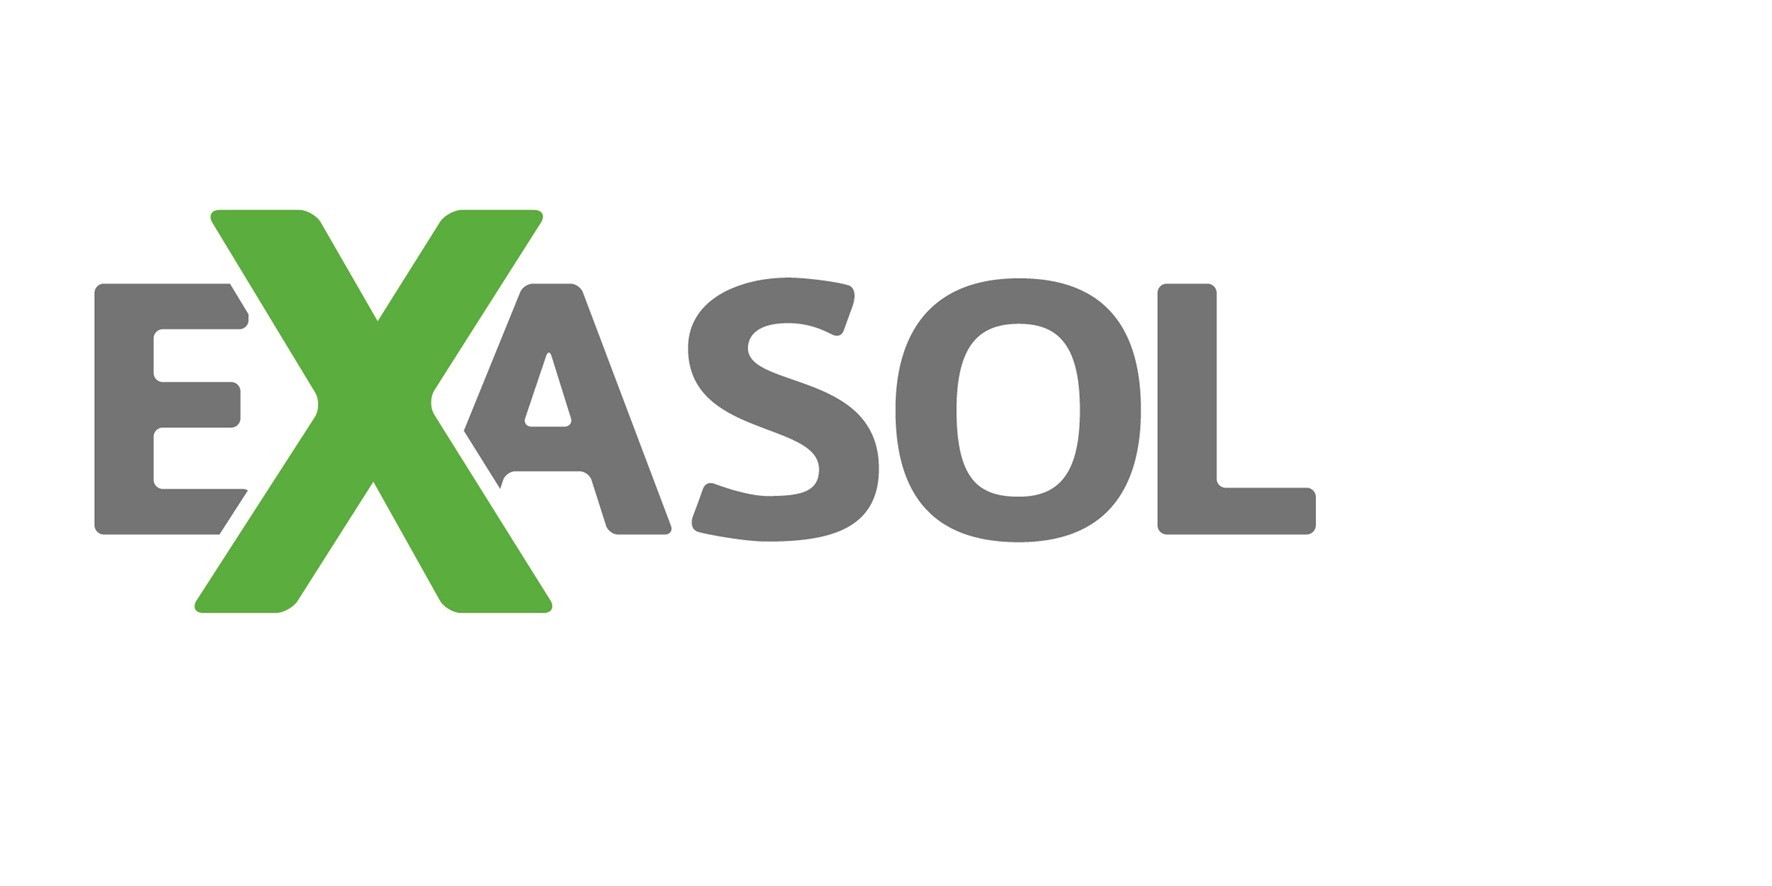 Revolut banks on Exasol for enterprise-wide analytics solution